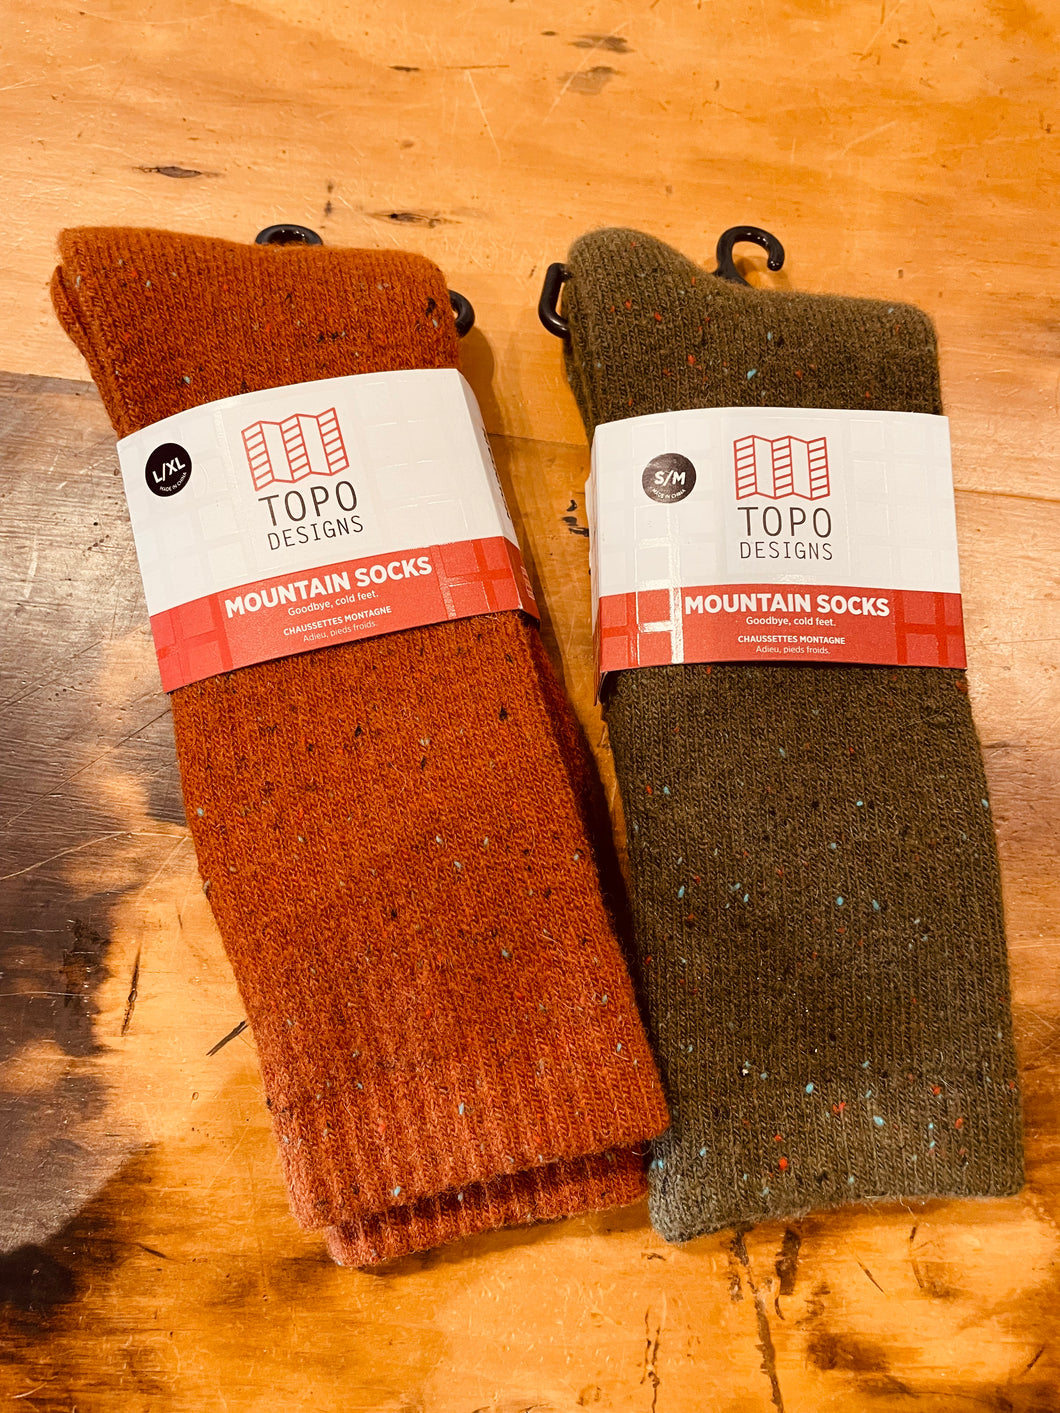 Topo Mountain Socks